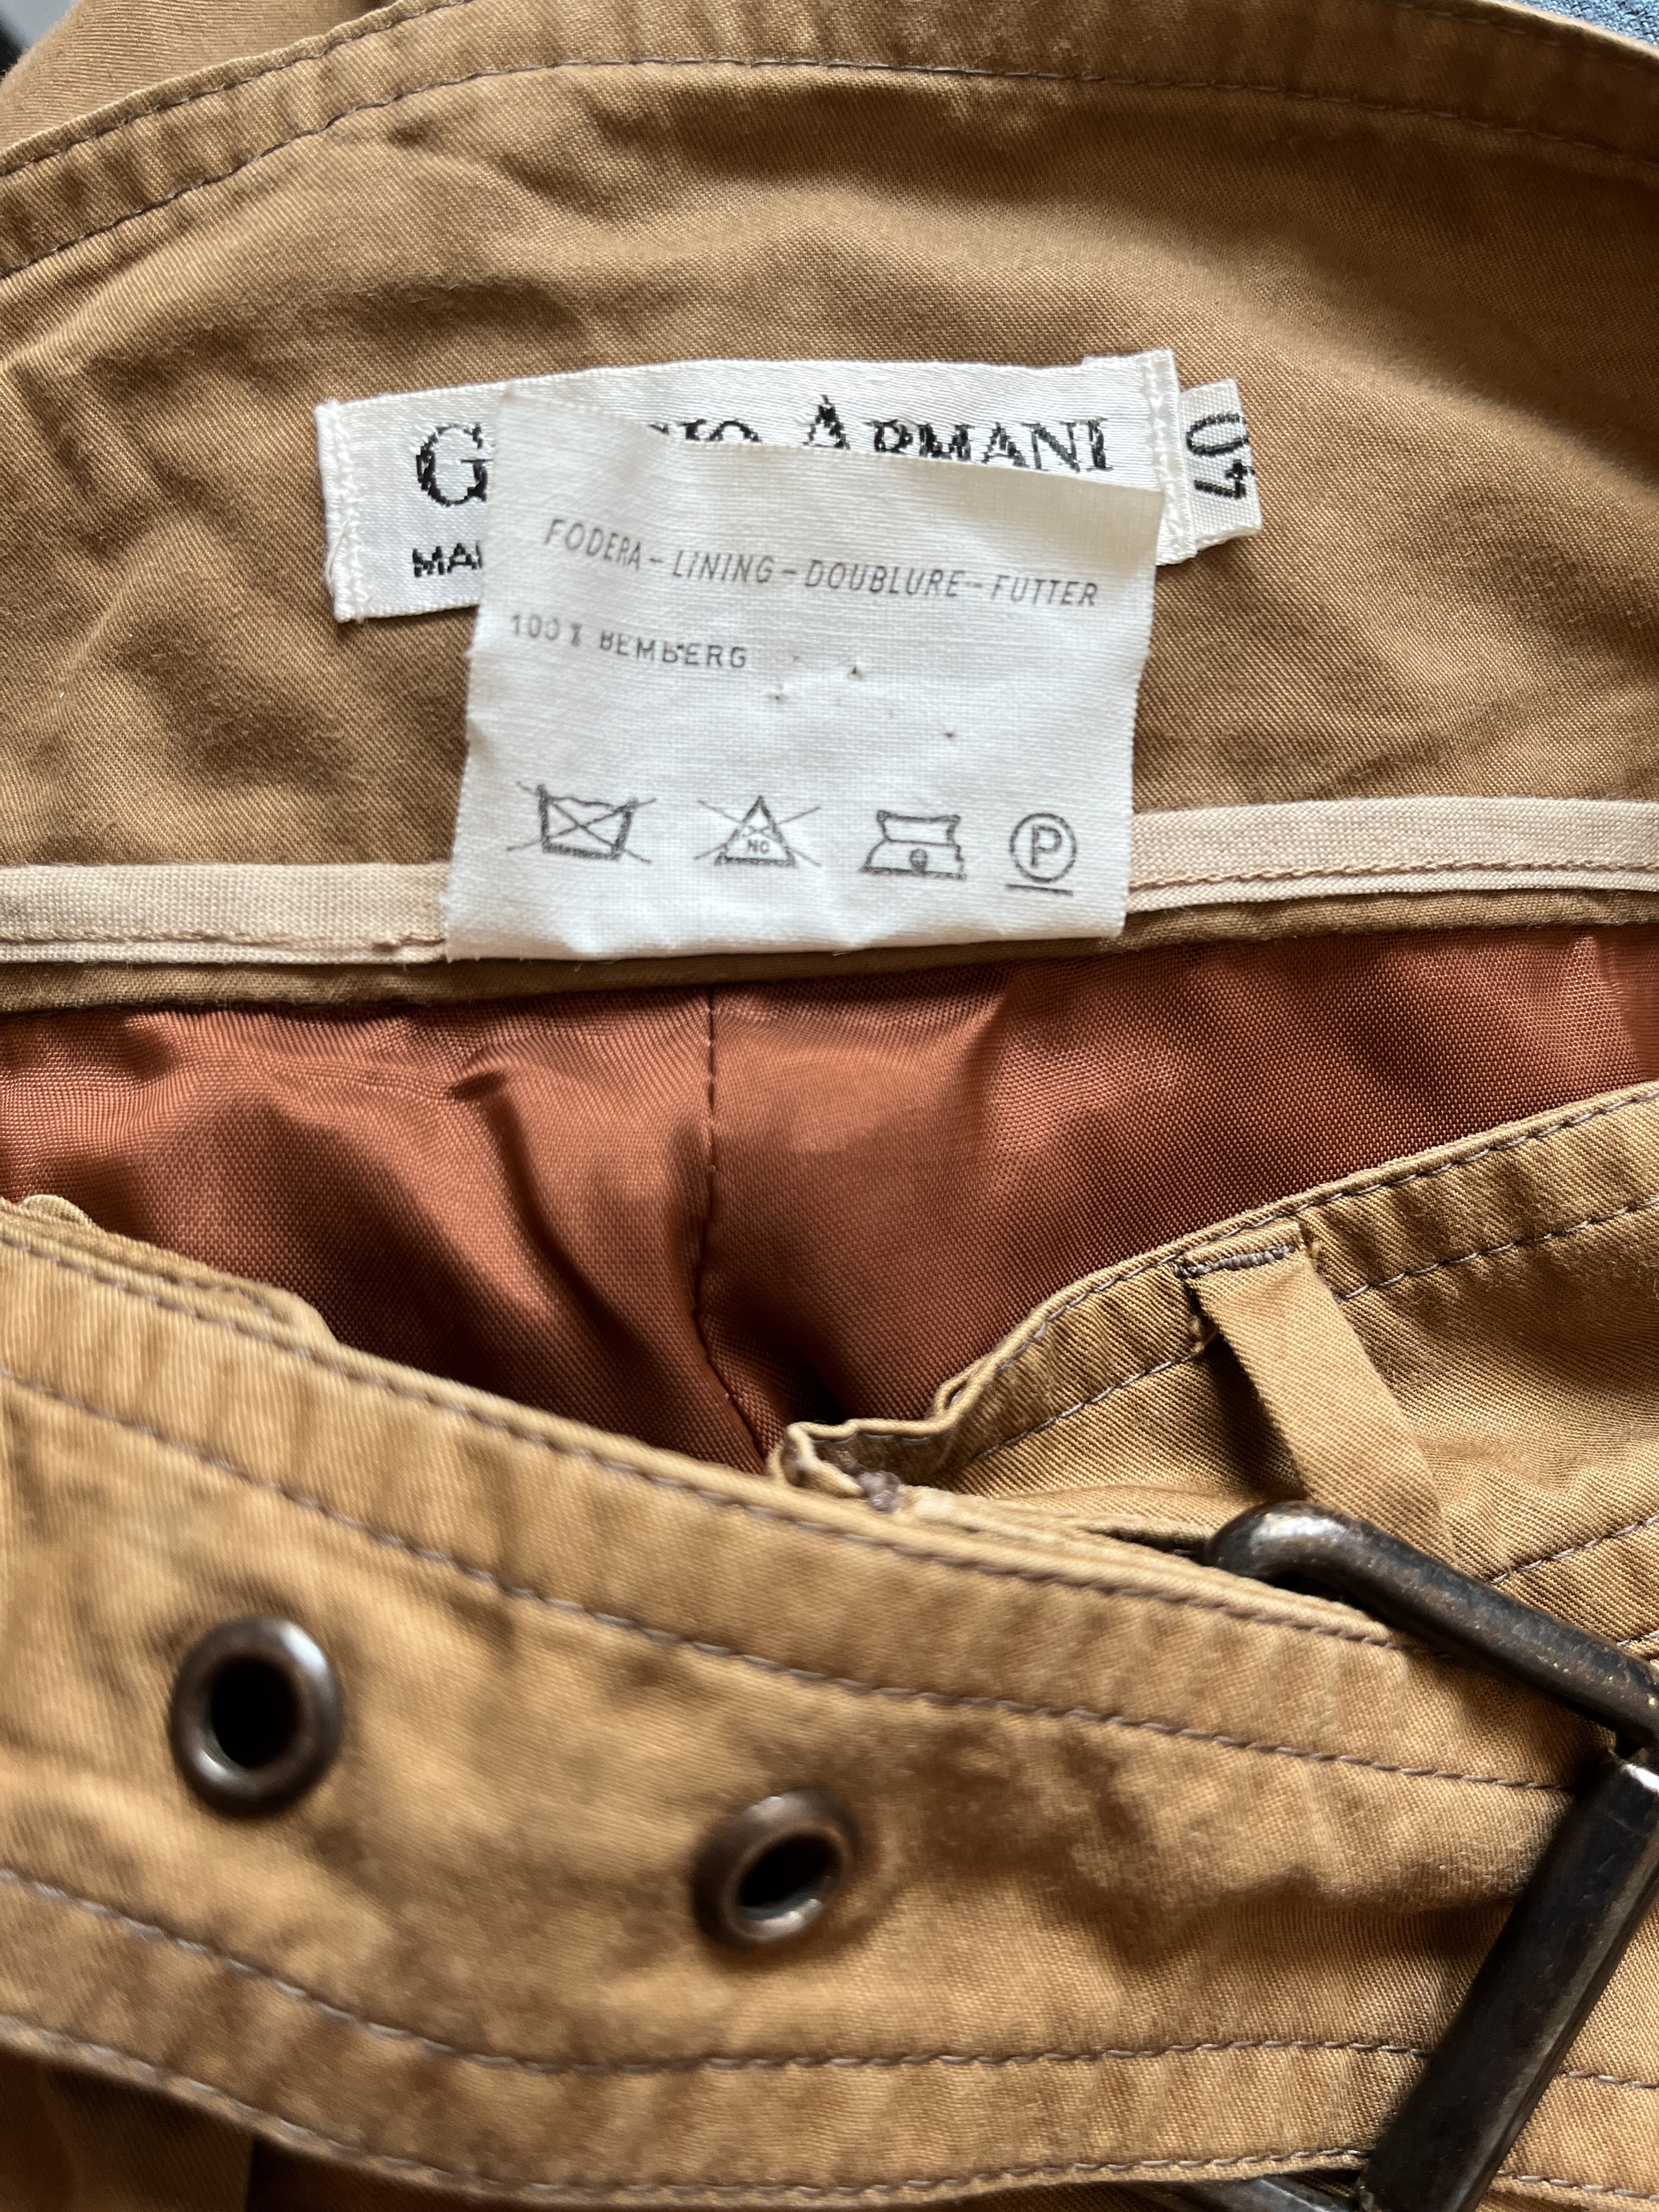 pantalon armani vintage détail étiquette